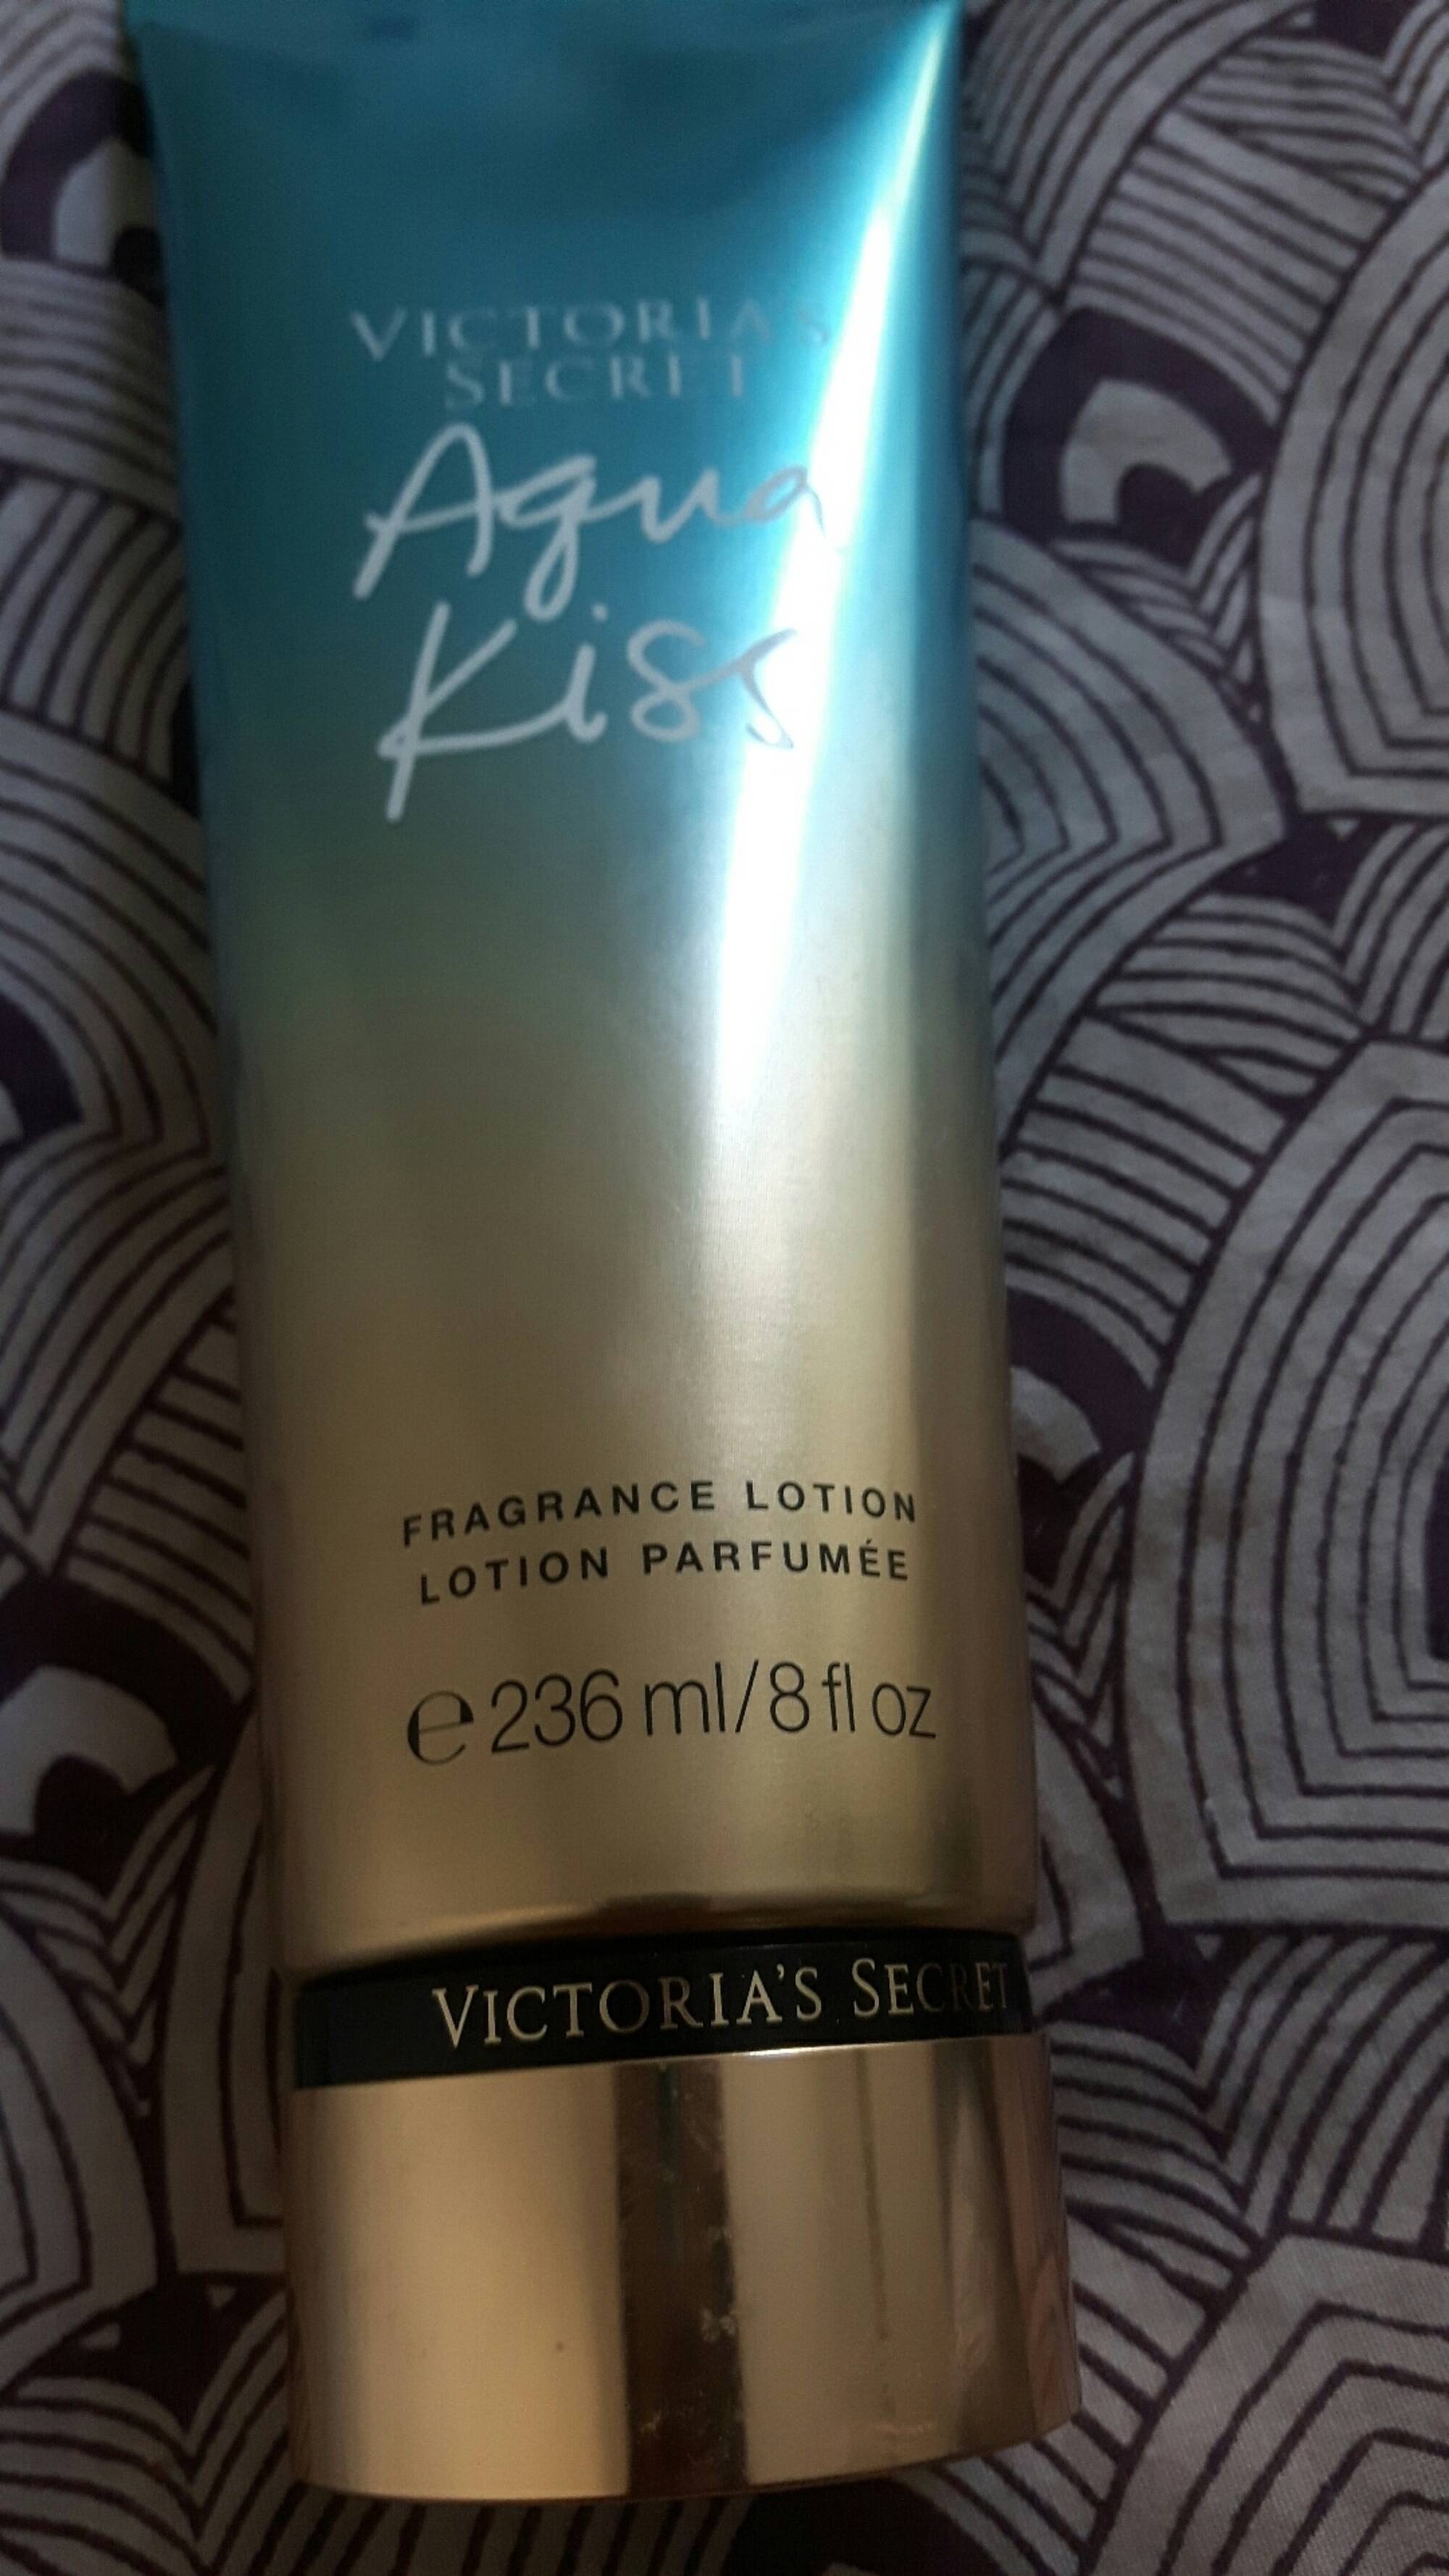 VICTORIA'S SECRET - Aqua kiss - Lotion parfumée